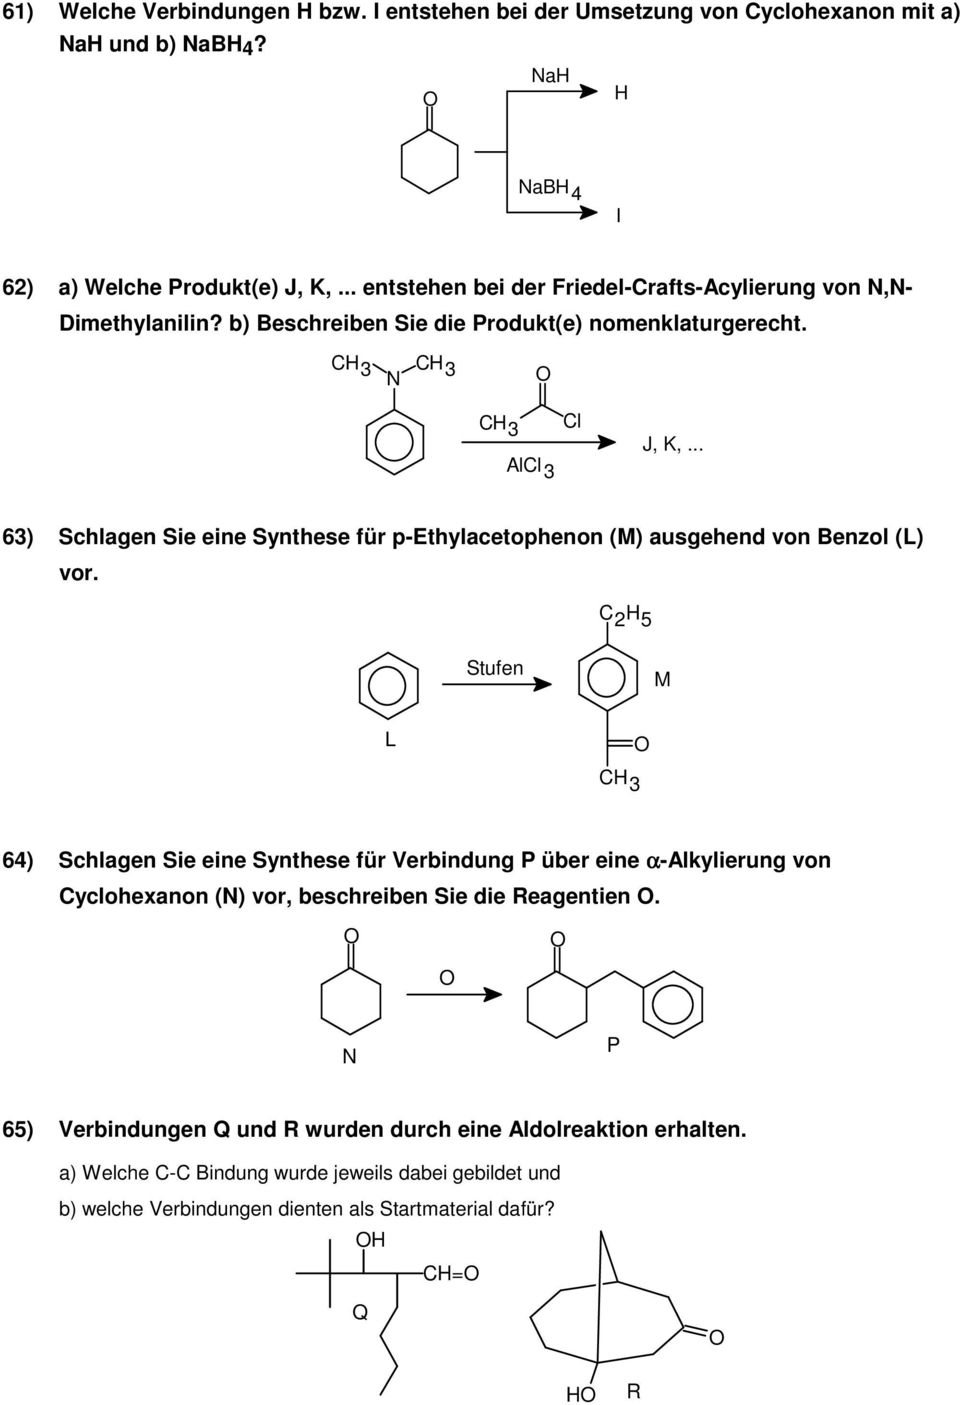 .. 63) Schlagen Sie eine Synthese für p-ethylacetophenon (M) ausgehend von Benzol (L) vor.